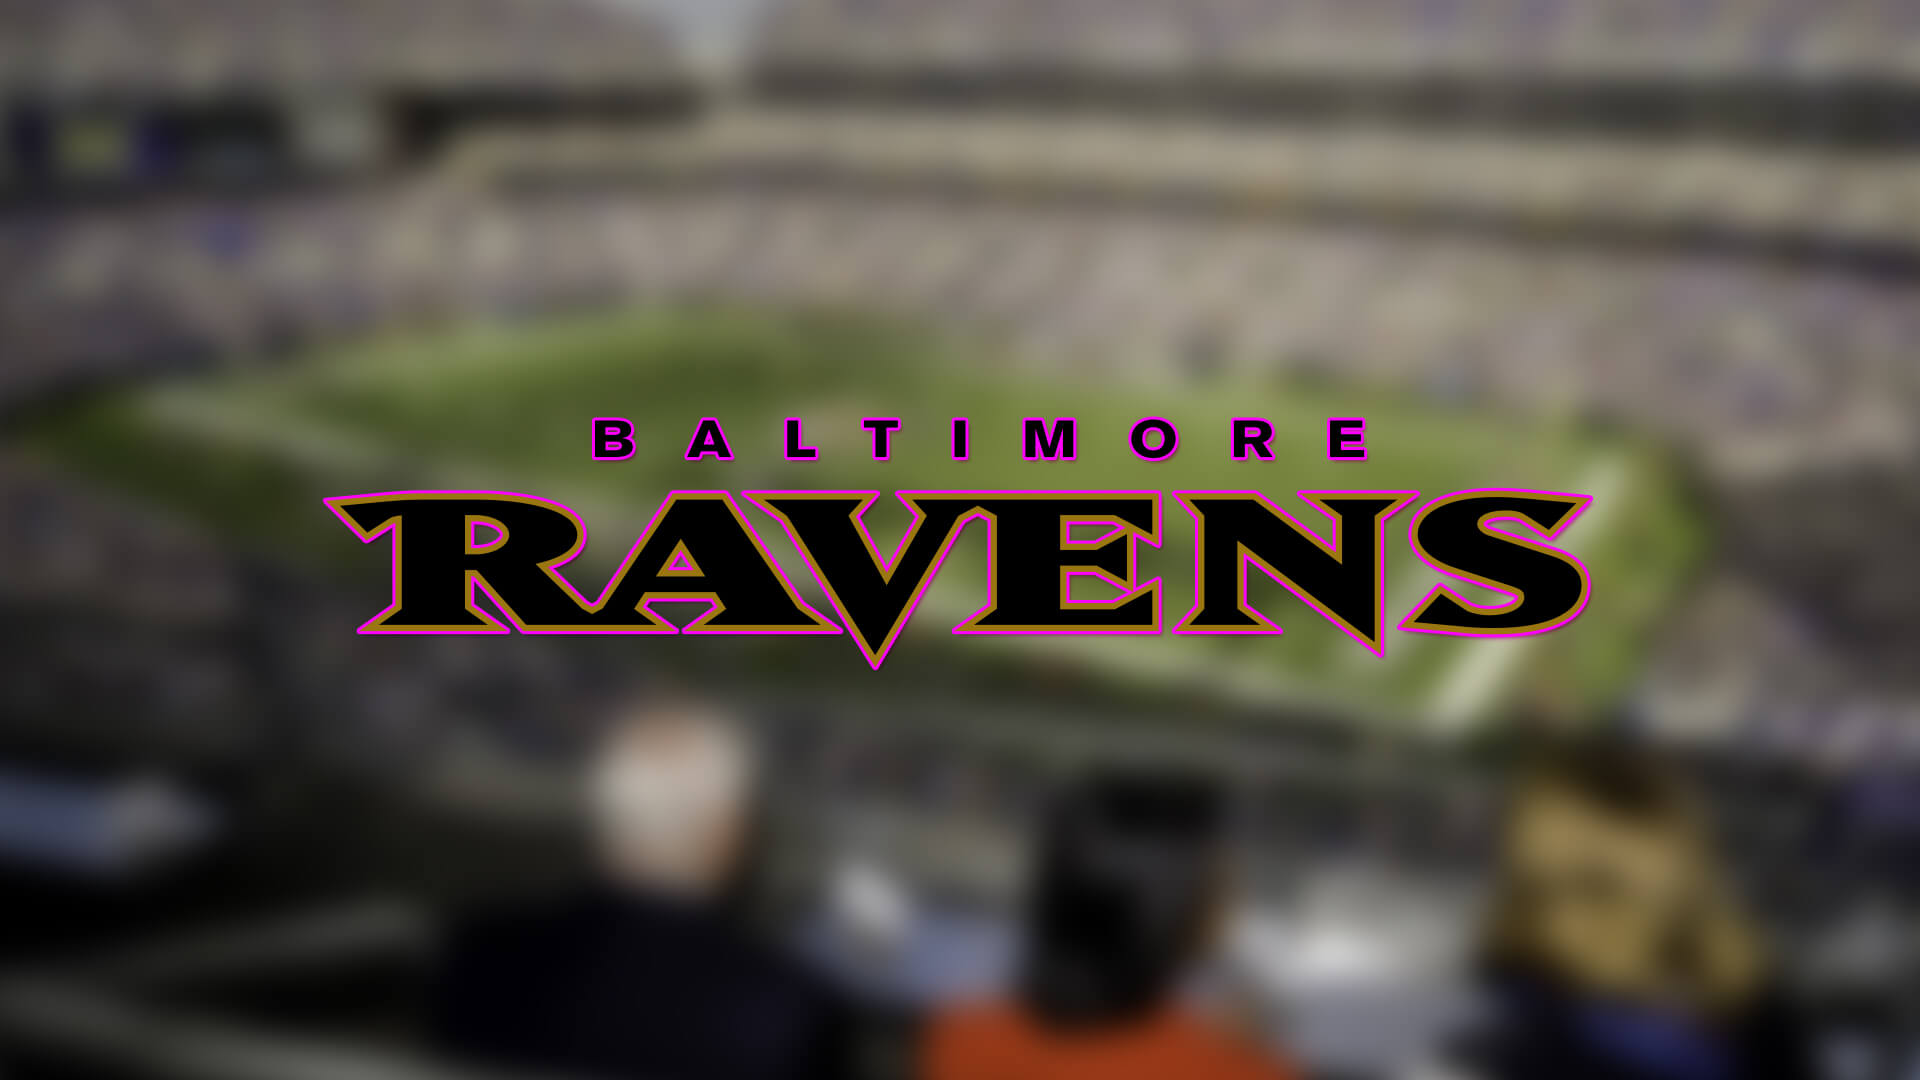 Baltimore Ravens 3 Oyuncusunu Aktif Oyuncu Kadrosuna Aldı | Korumalı Futbol Türkiye